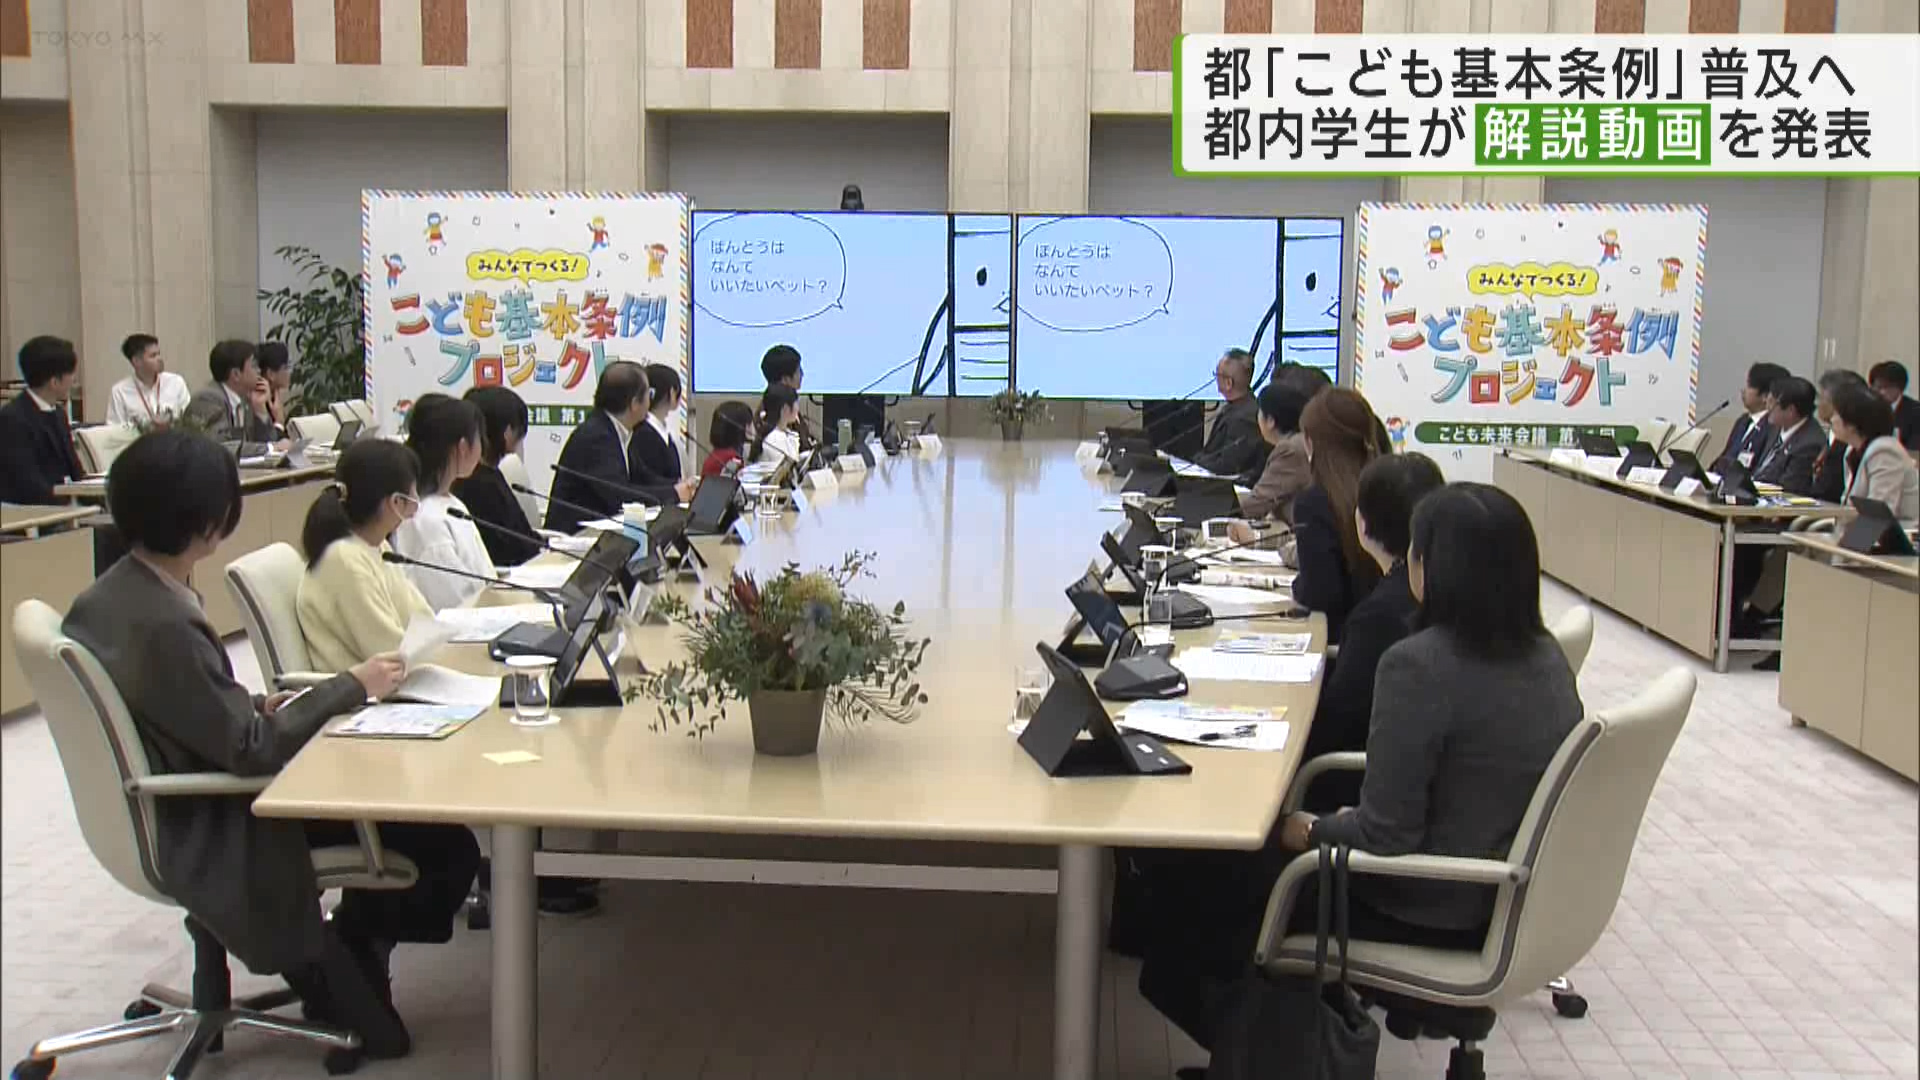 東京都が子供の権利などを守るために制定した「東京都こども基本条例」を周知するための会議が都庁で行われ、都内の子供たちが自ら企画した条例の啓発動画を小池知事らに発表しました。